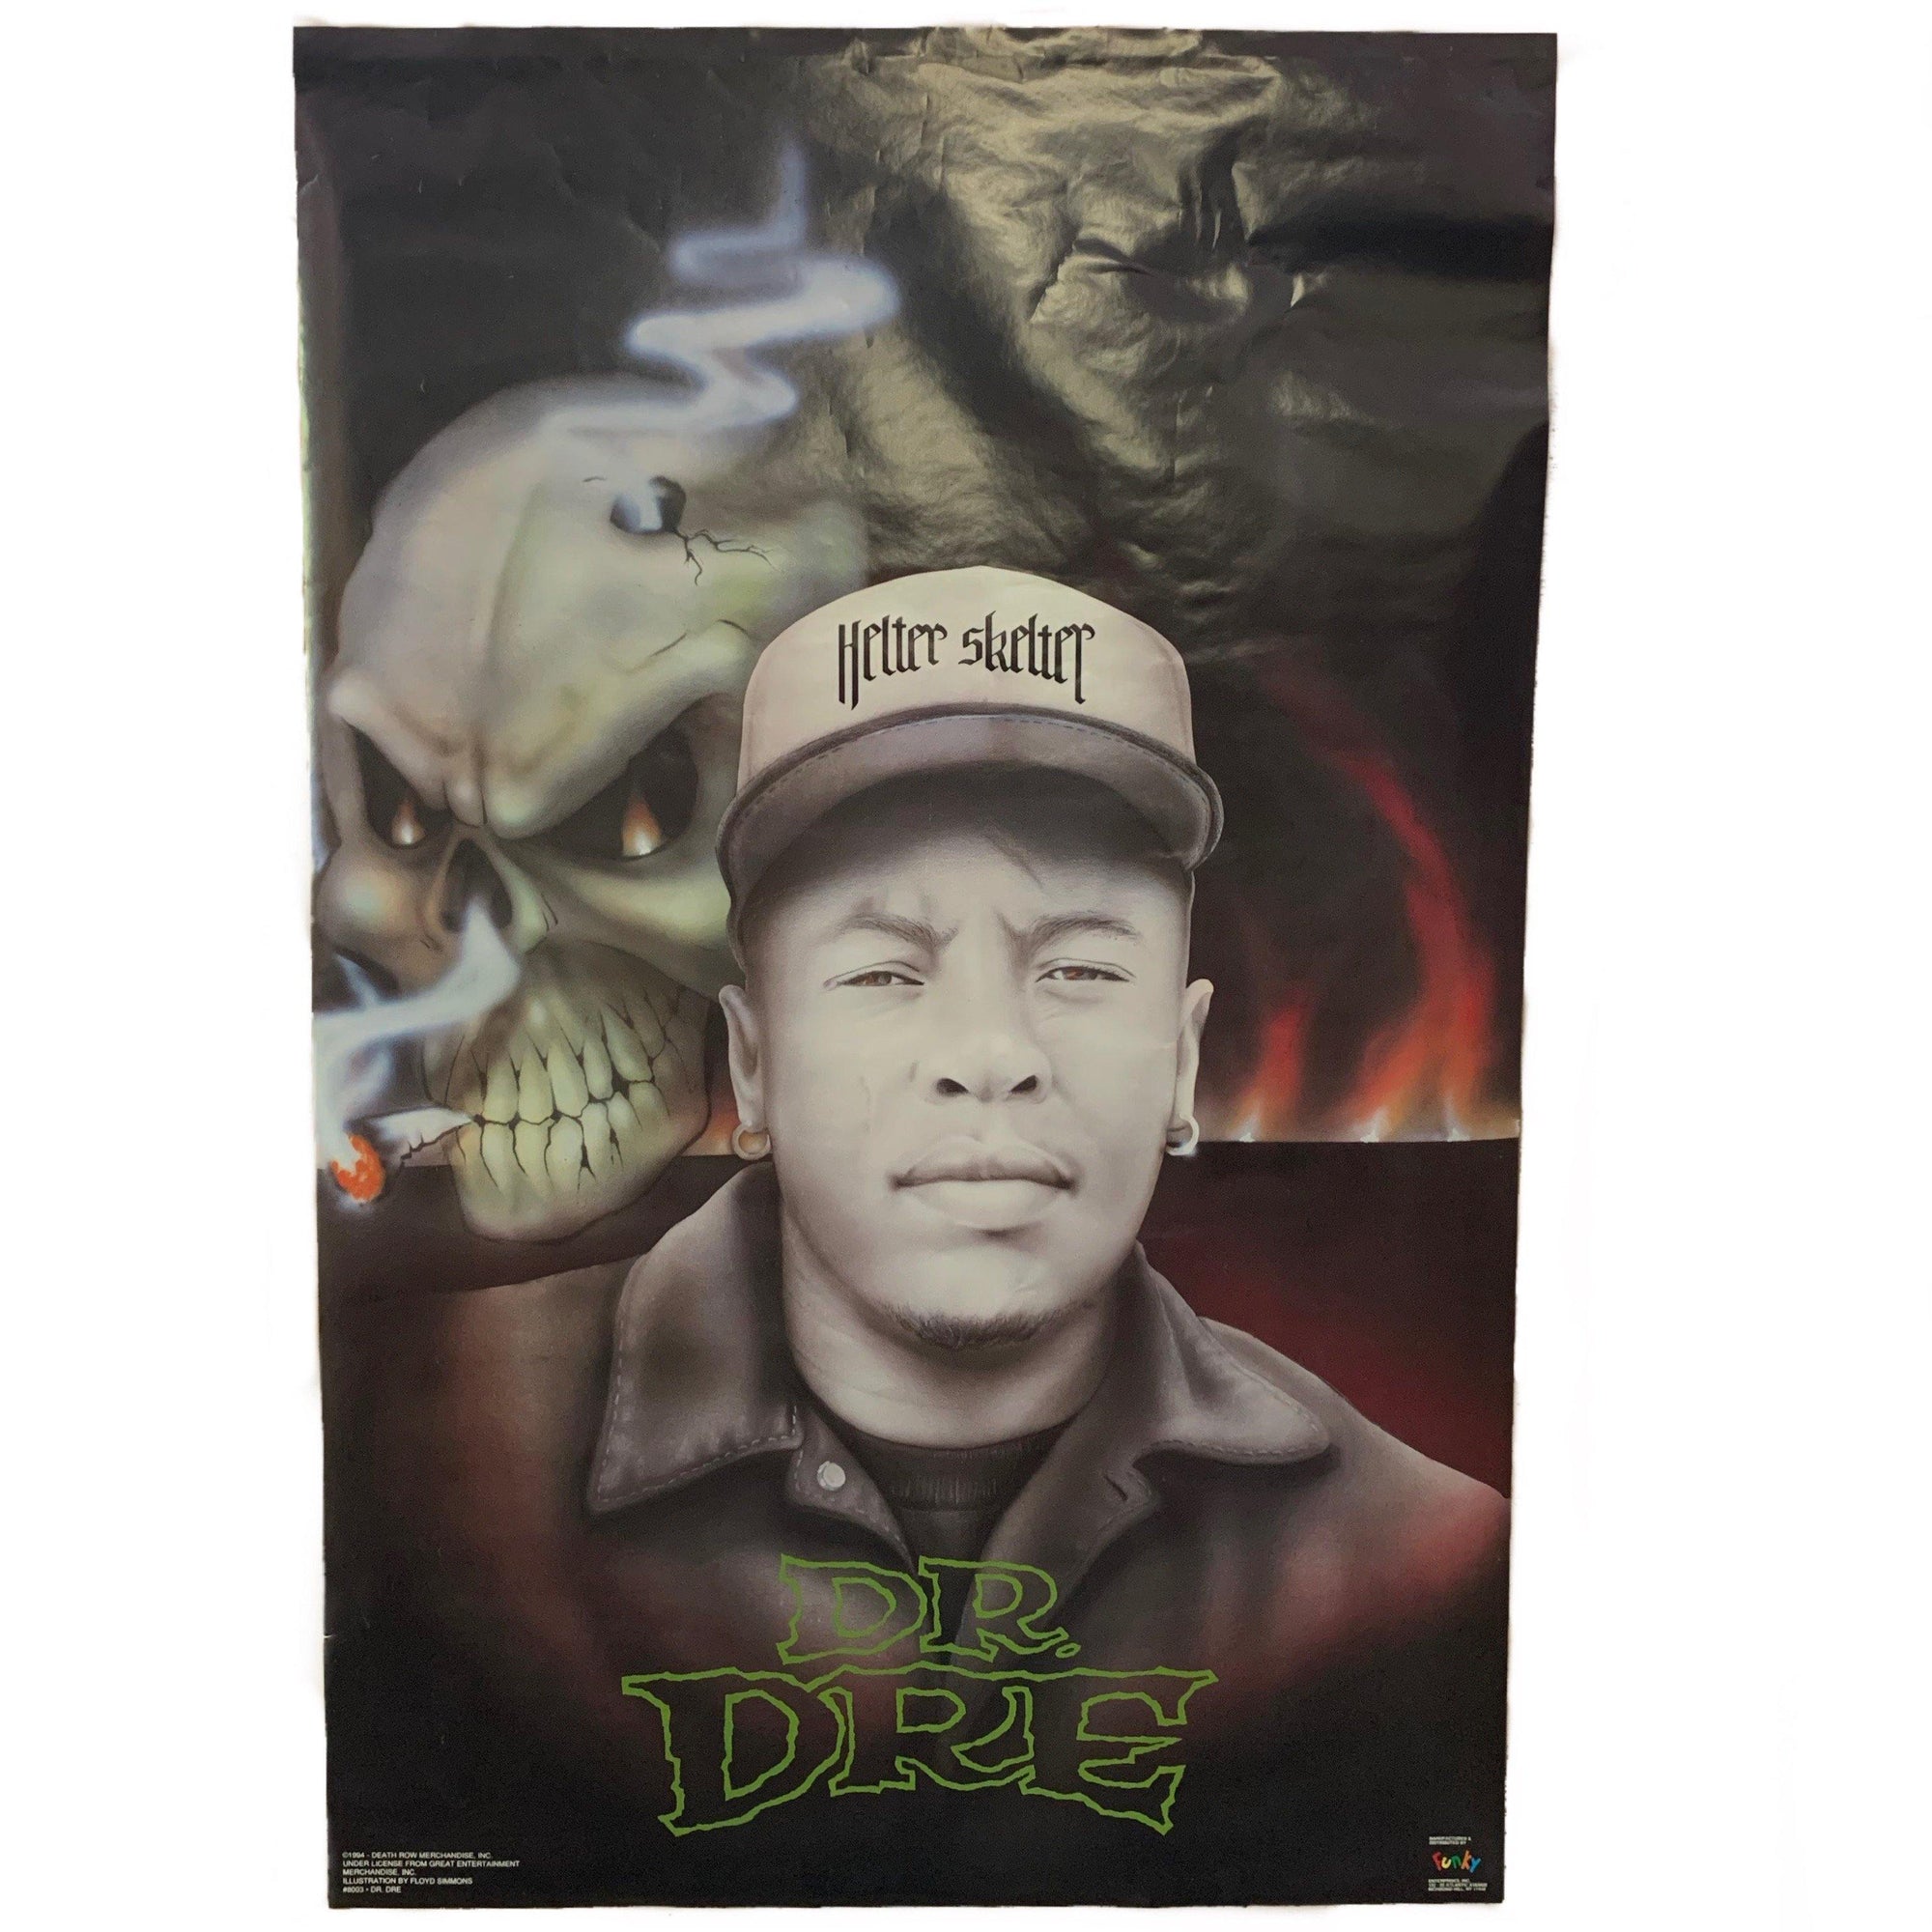 Vintage Dr. Dre "Helter Skelter" Poster - jointcustodydc